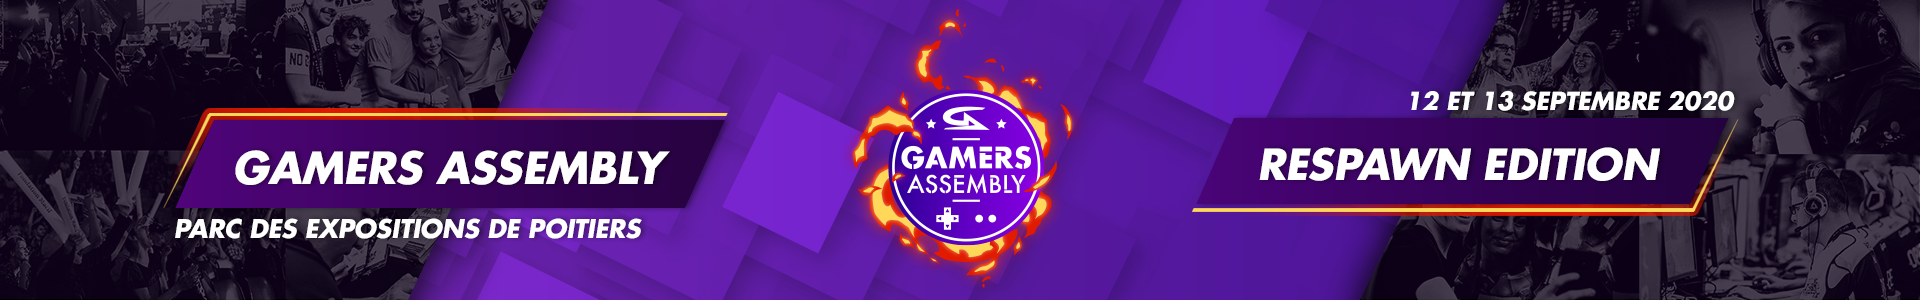 Image de présentation de Gamers Assembly Respawn Edition